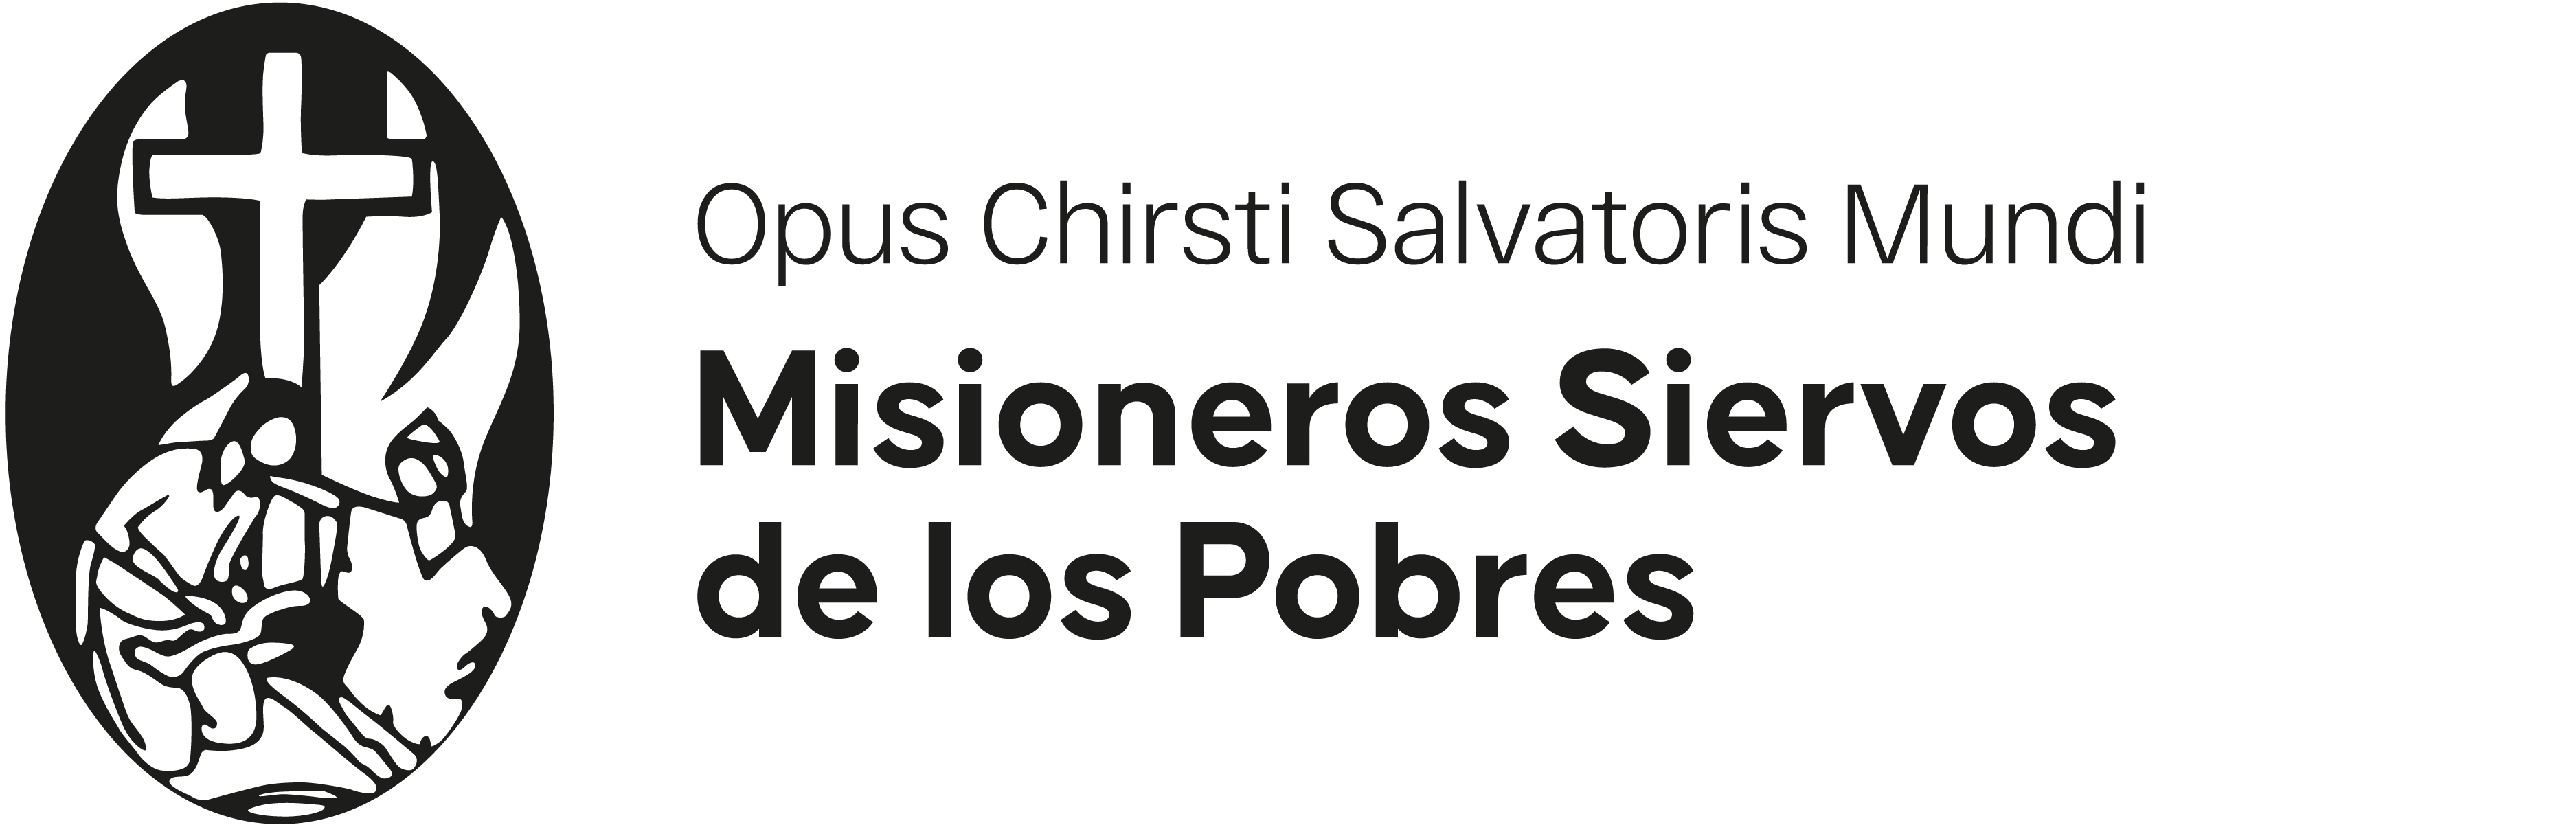 Misioneros Siervos de los Pobres logo